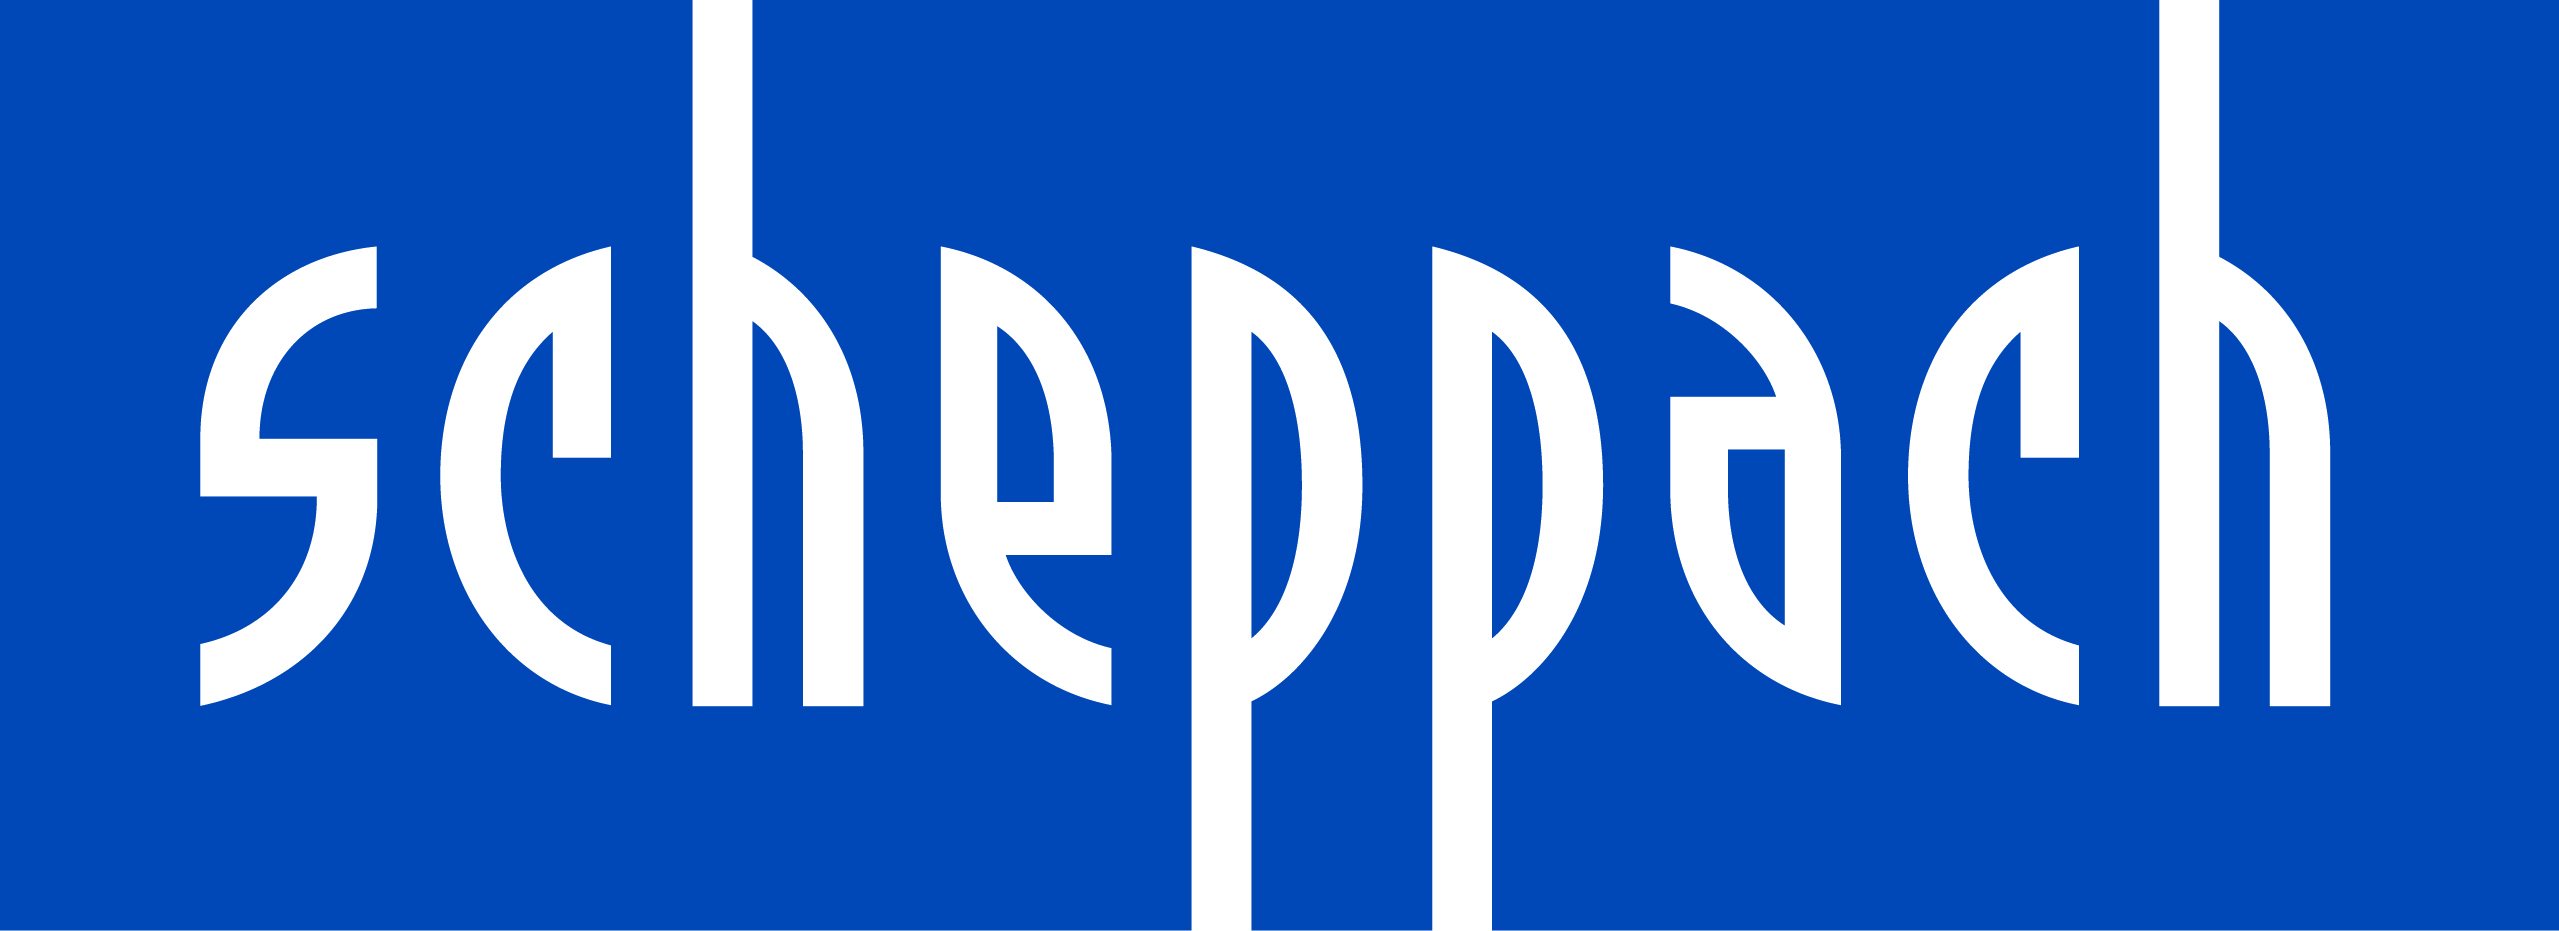 Scheppach logo.